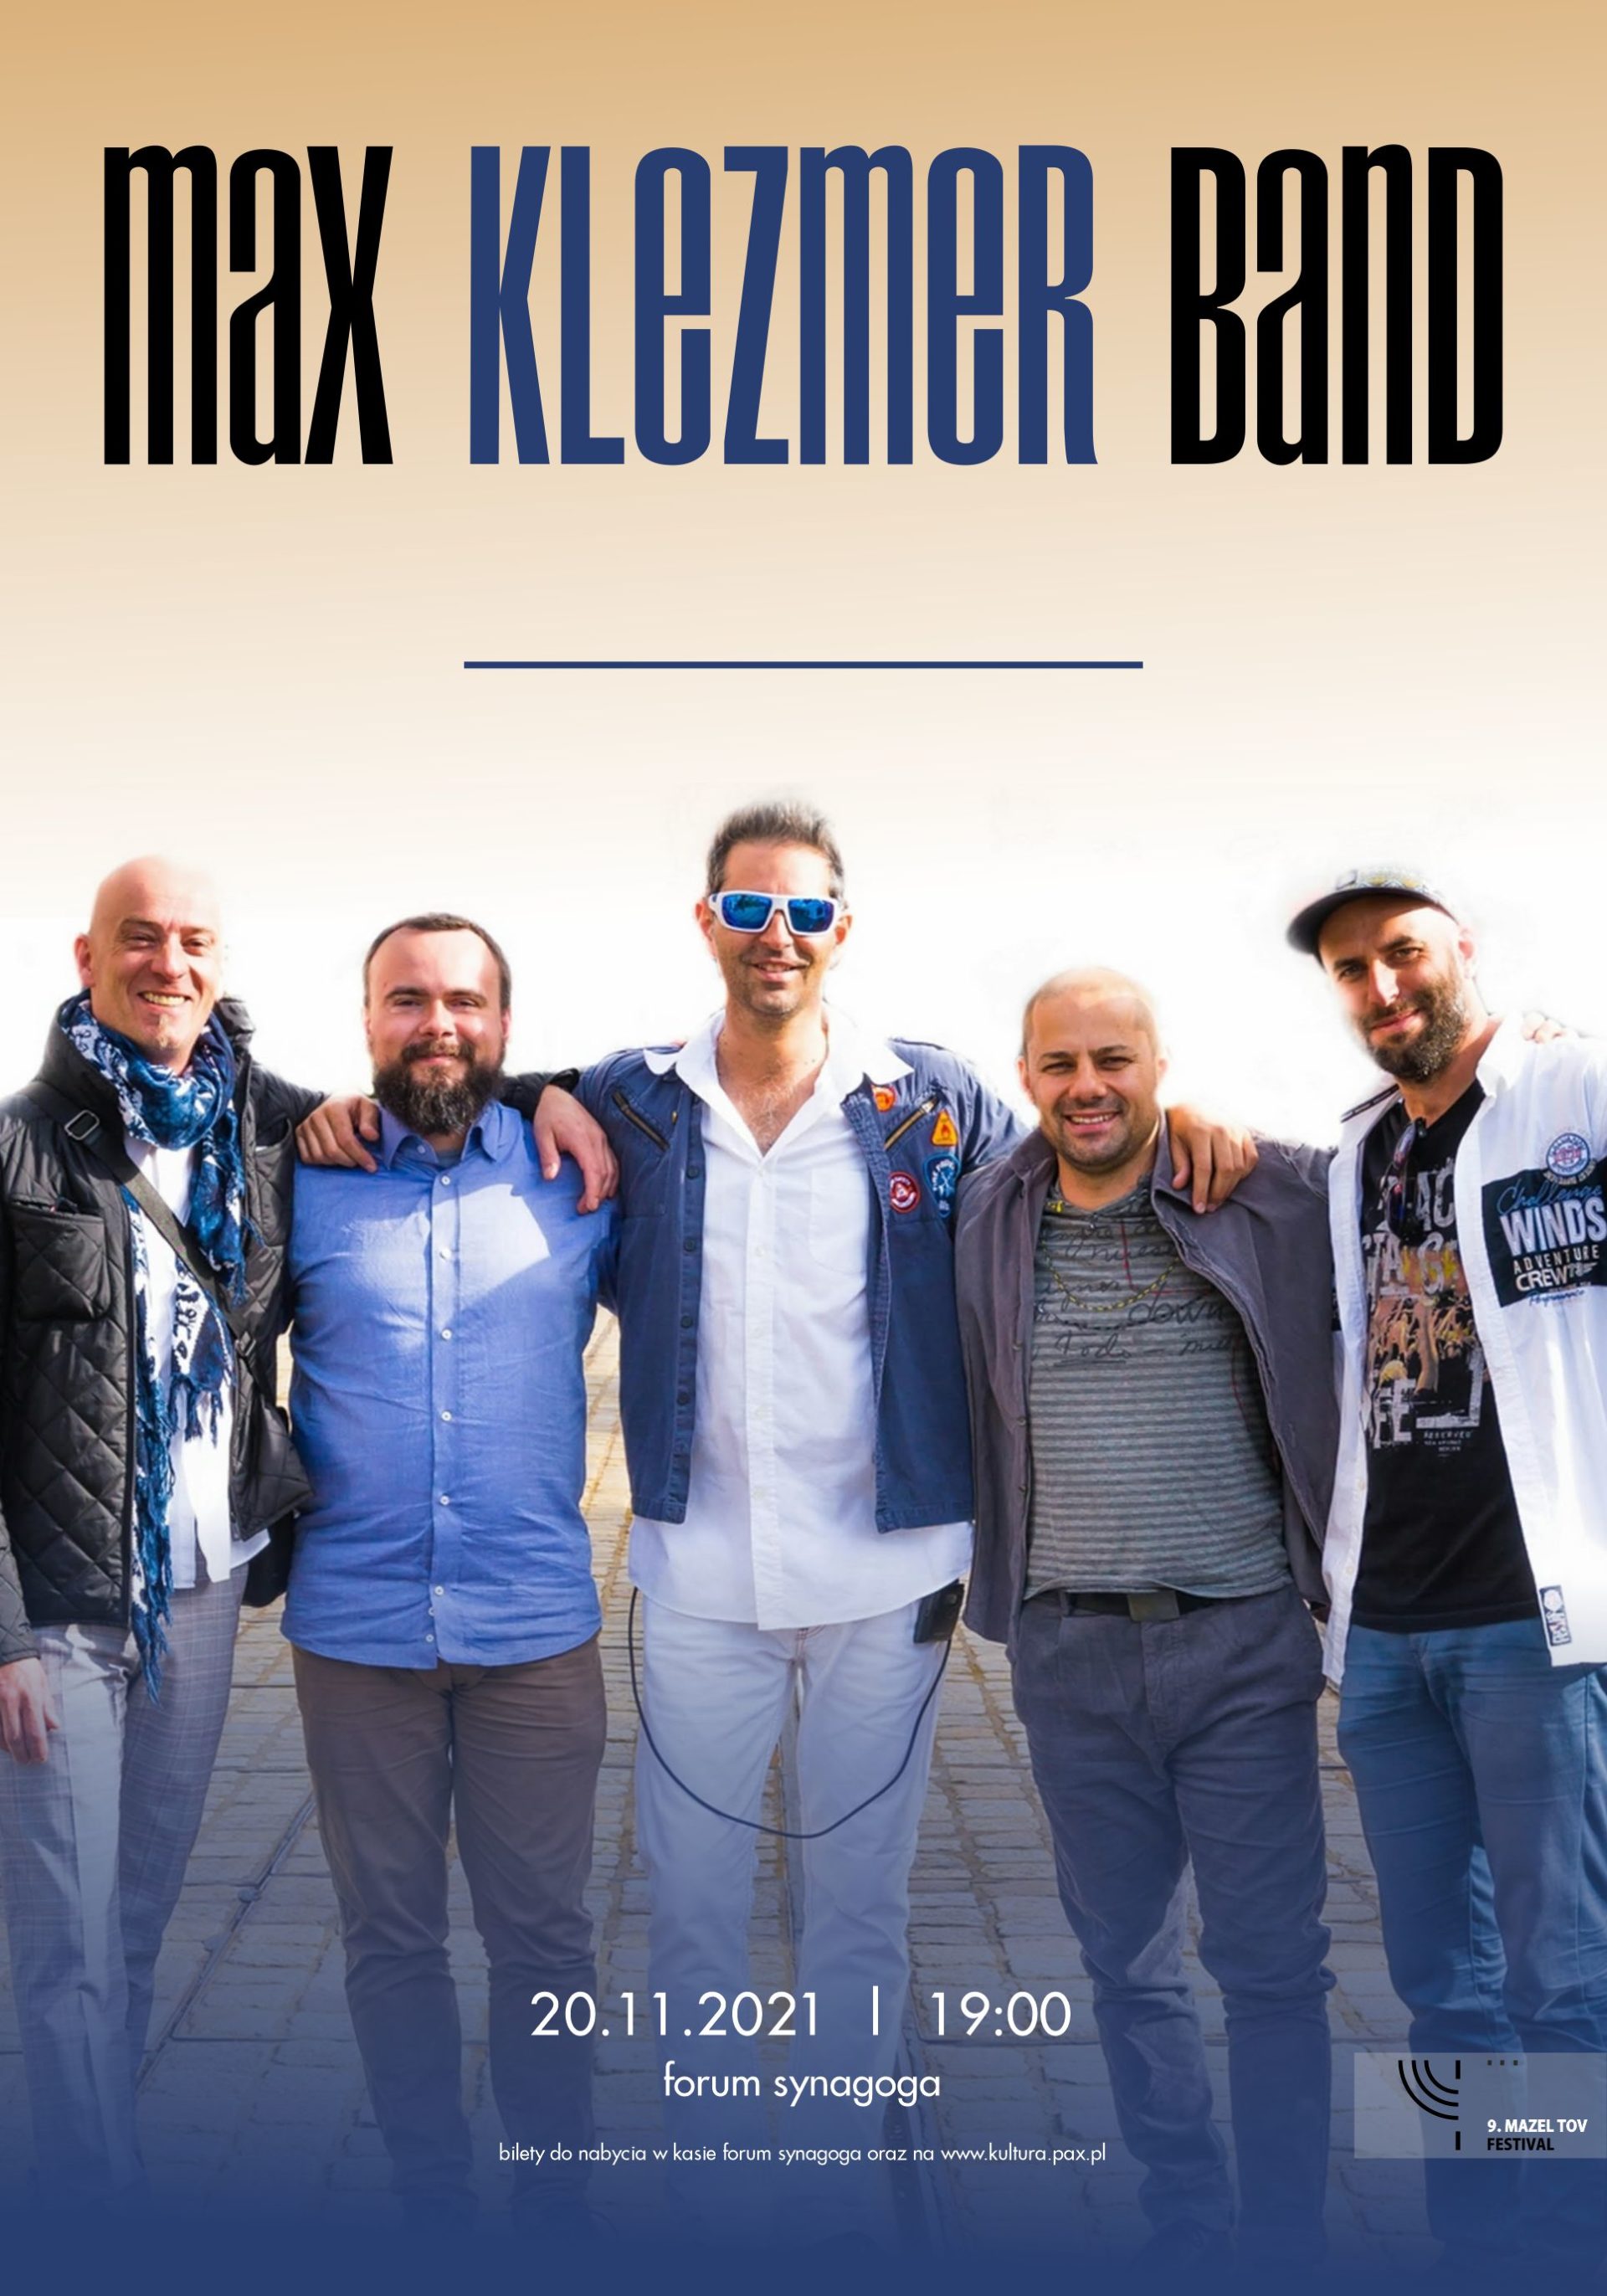 9. Mazel Tov Festival | Max Klezmer Band